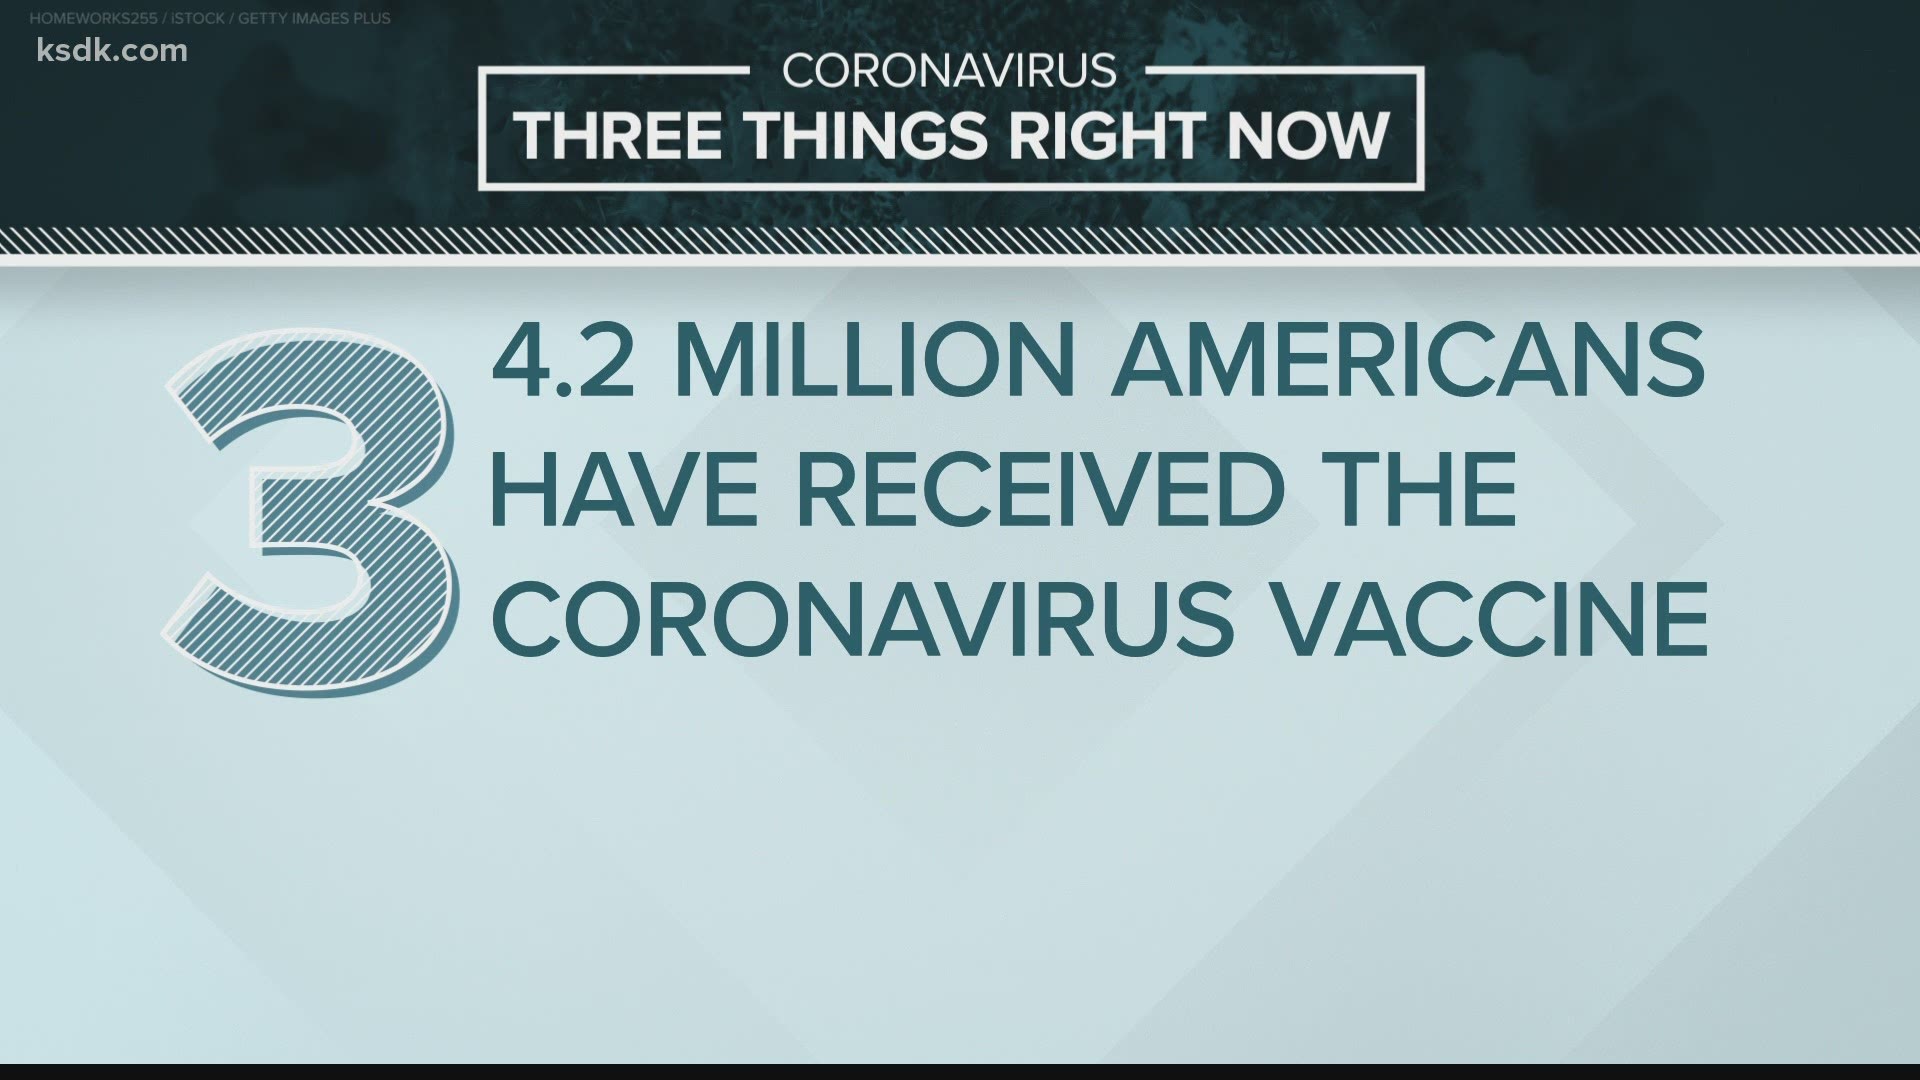 Here are the latest coronavirus headlines from Jan. 4, 2021.